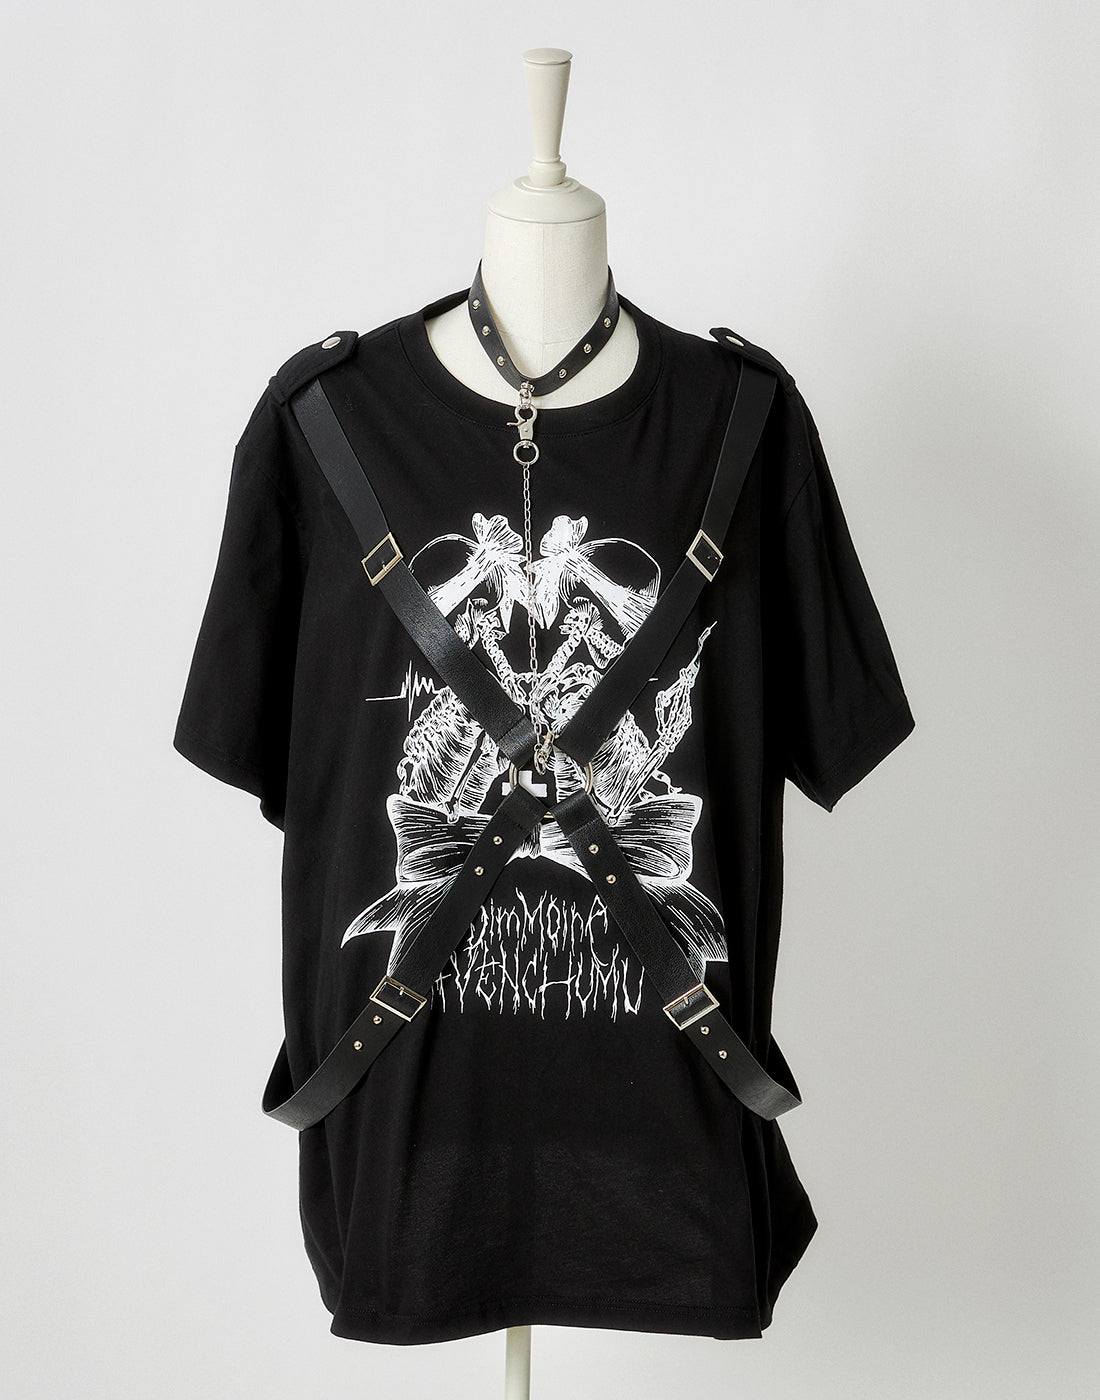 【5月31日(金)17:00予約開始】twin skull print harness T-shirt